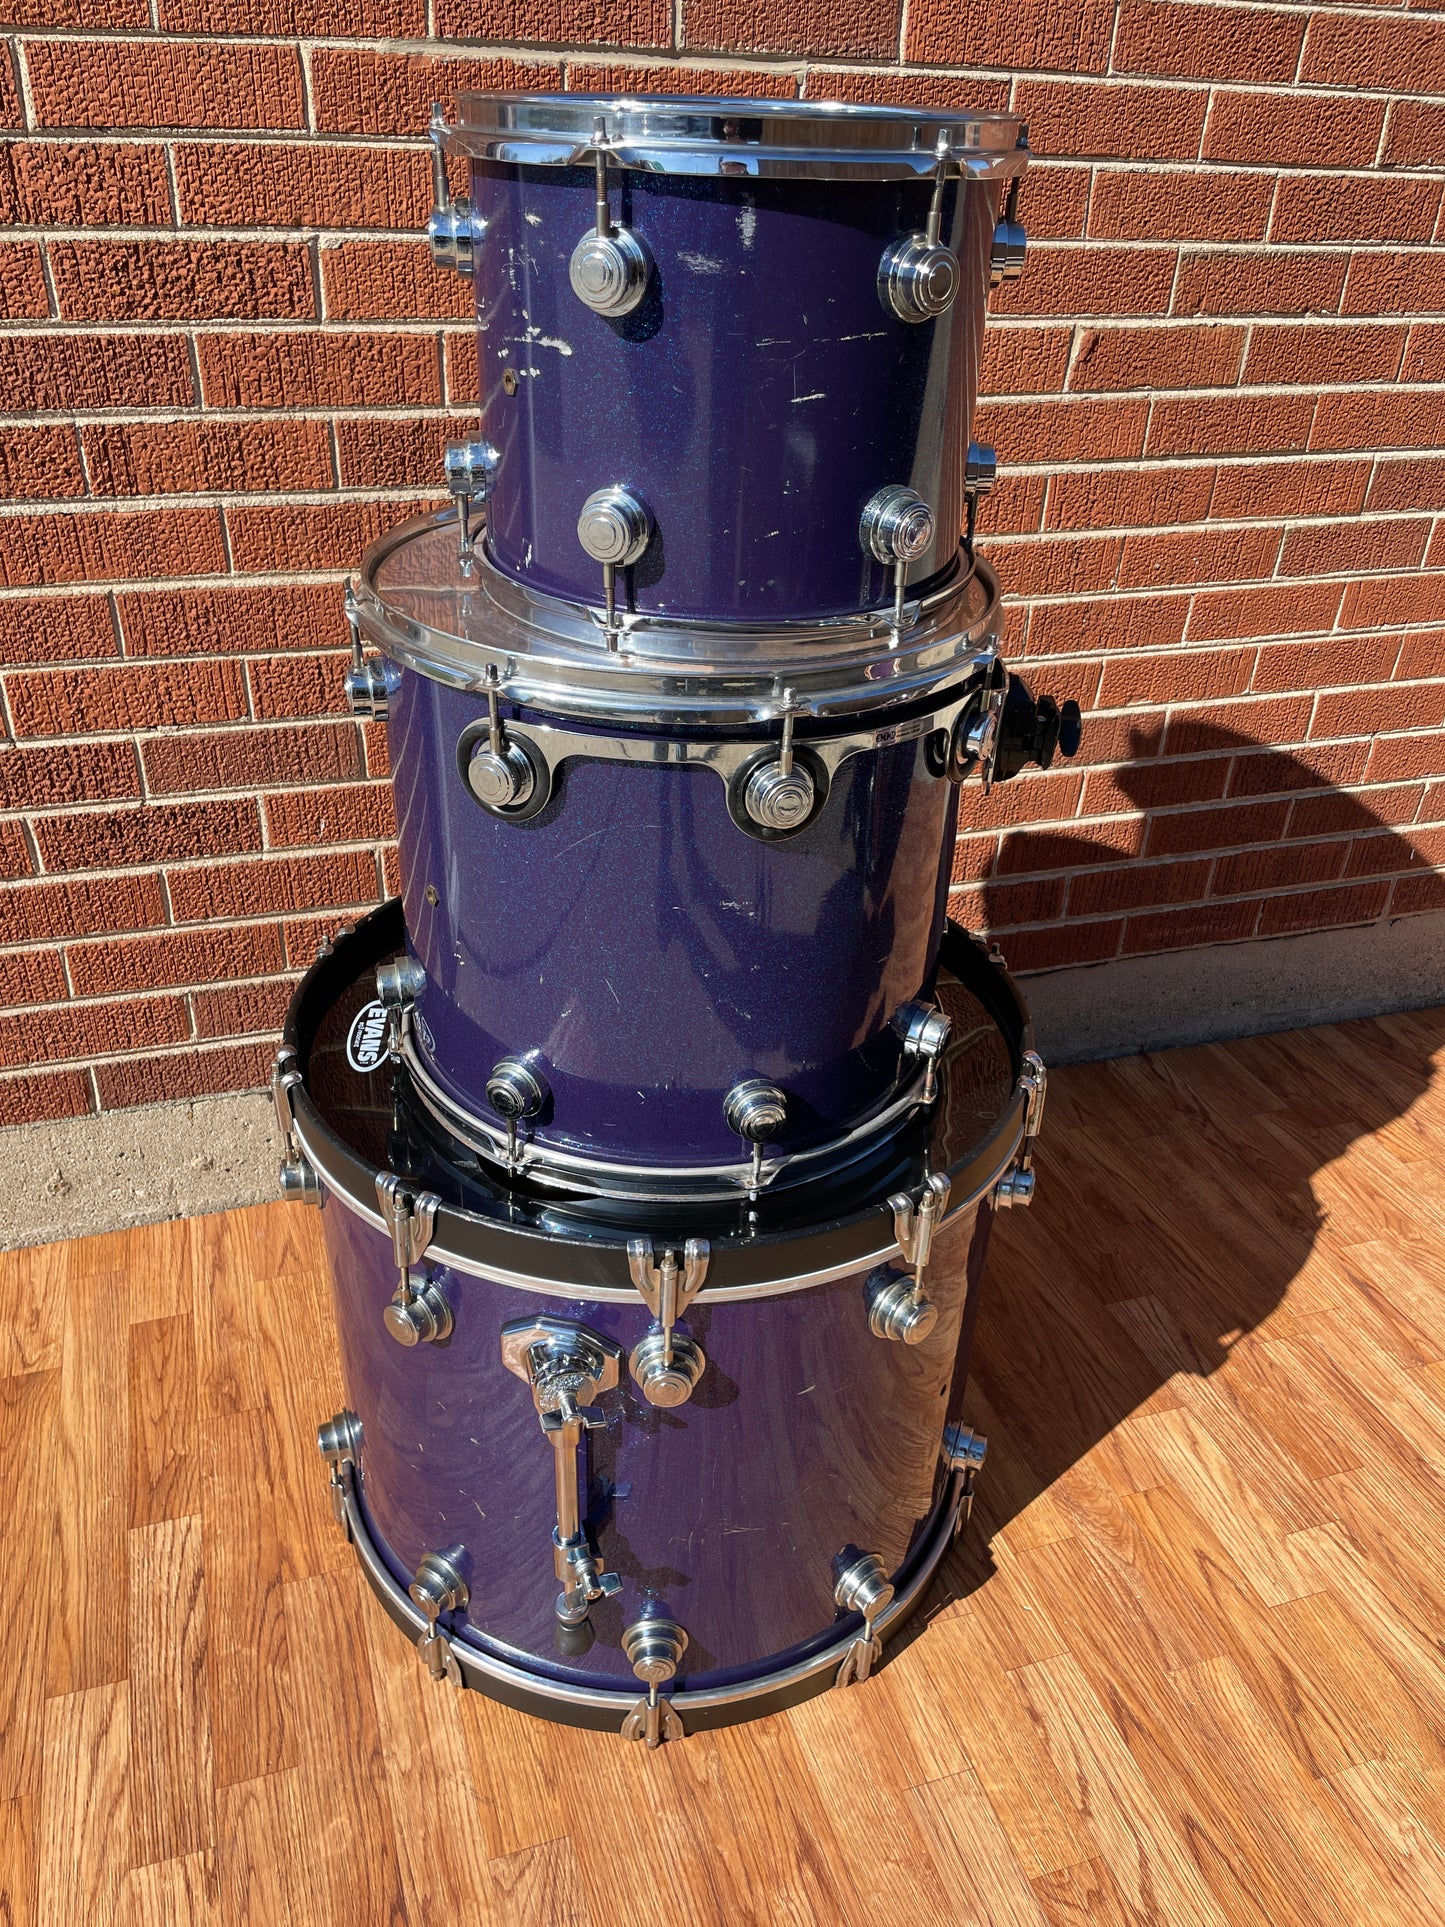 DW Drum Set Blue/Purple Sparkle Drum Workshop Pre-Collector's Series 22/12/16